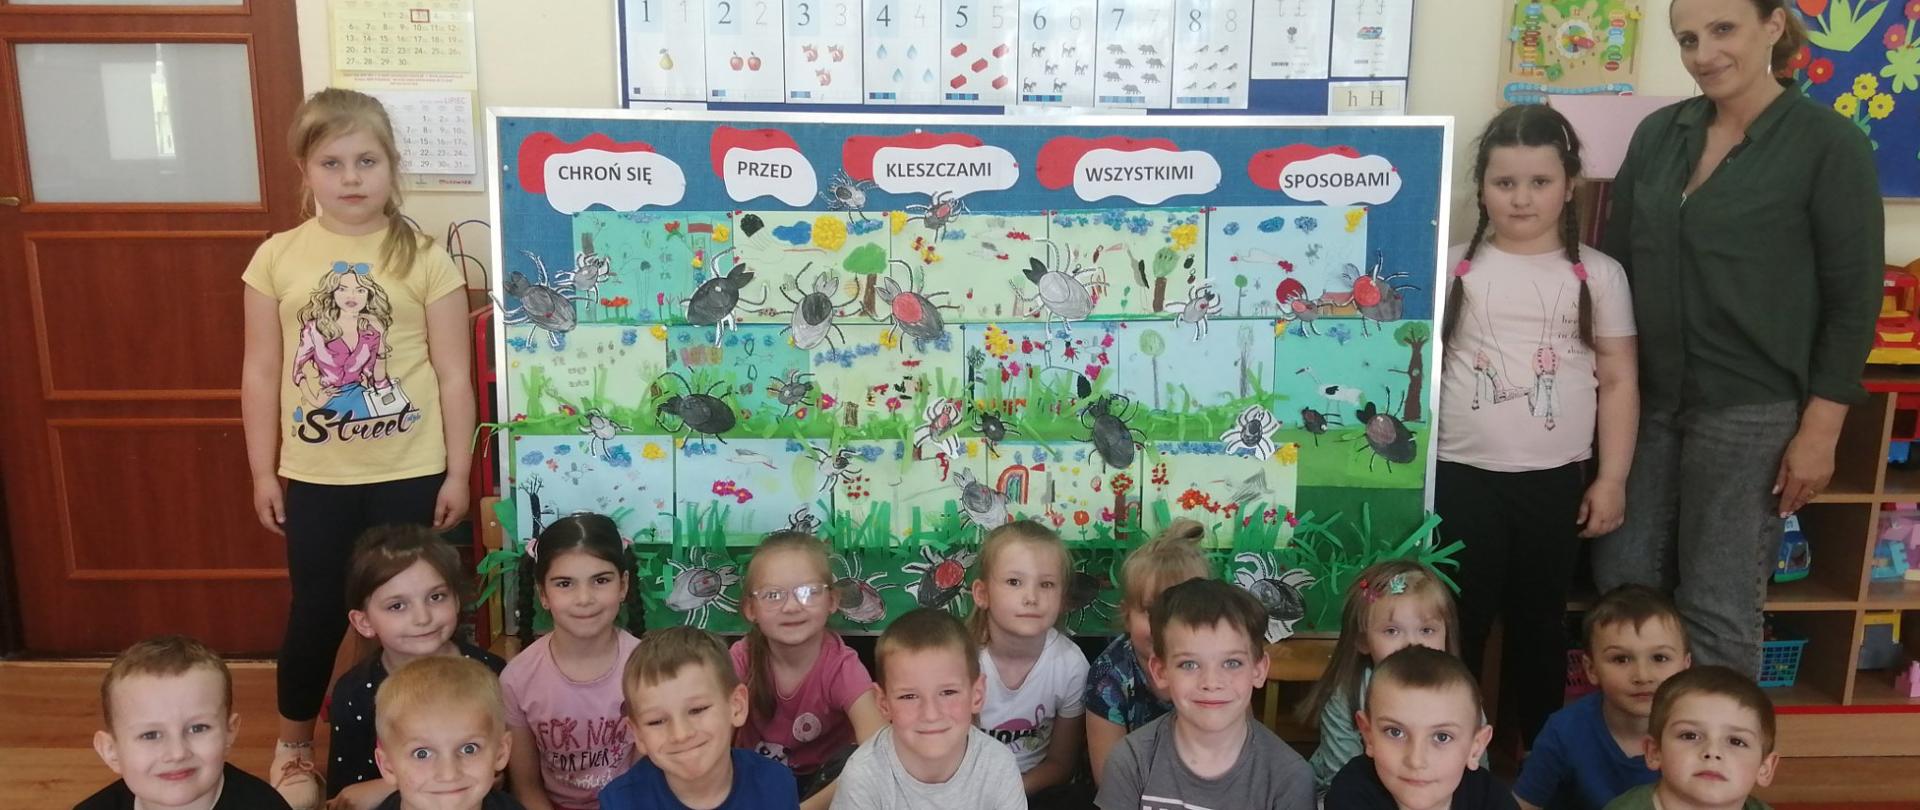 Dzieci przy tablicy z rysunkami łąki i kleszczy